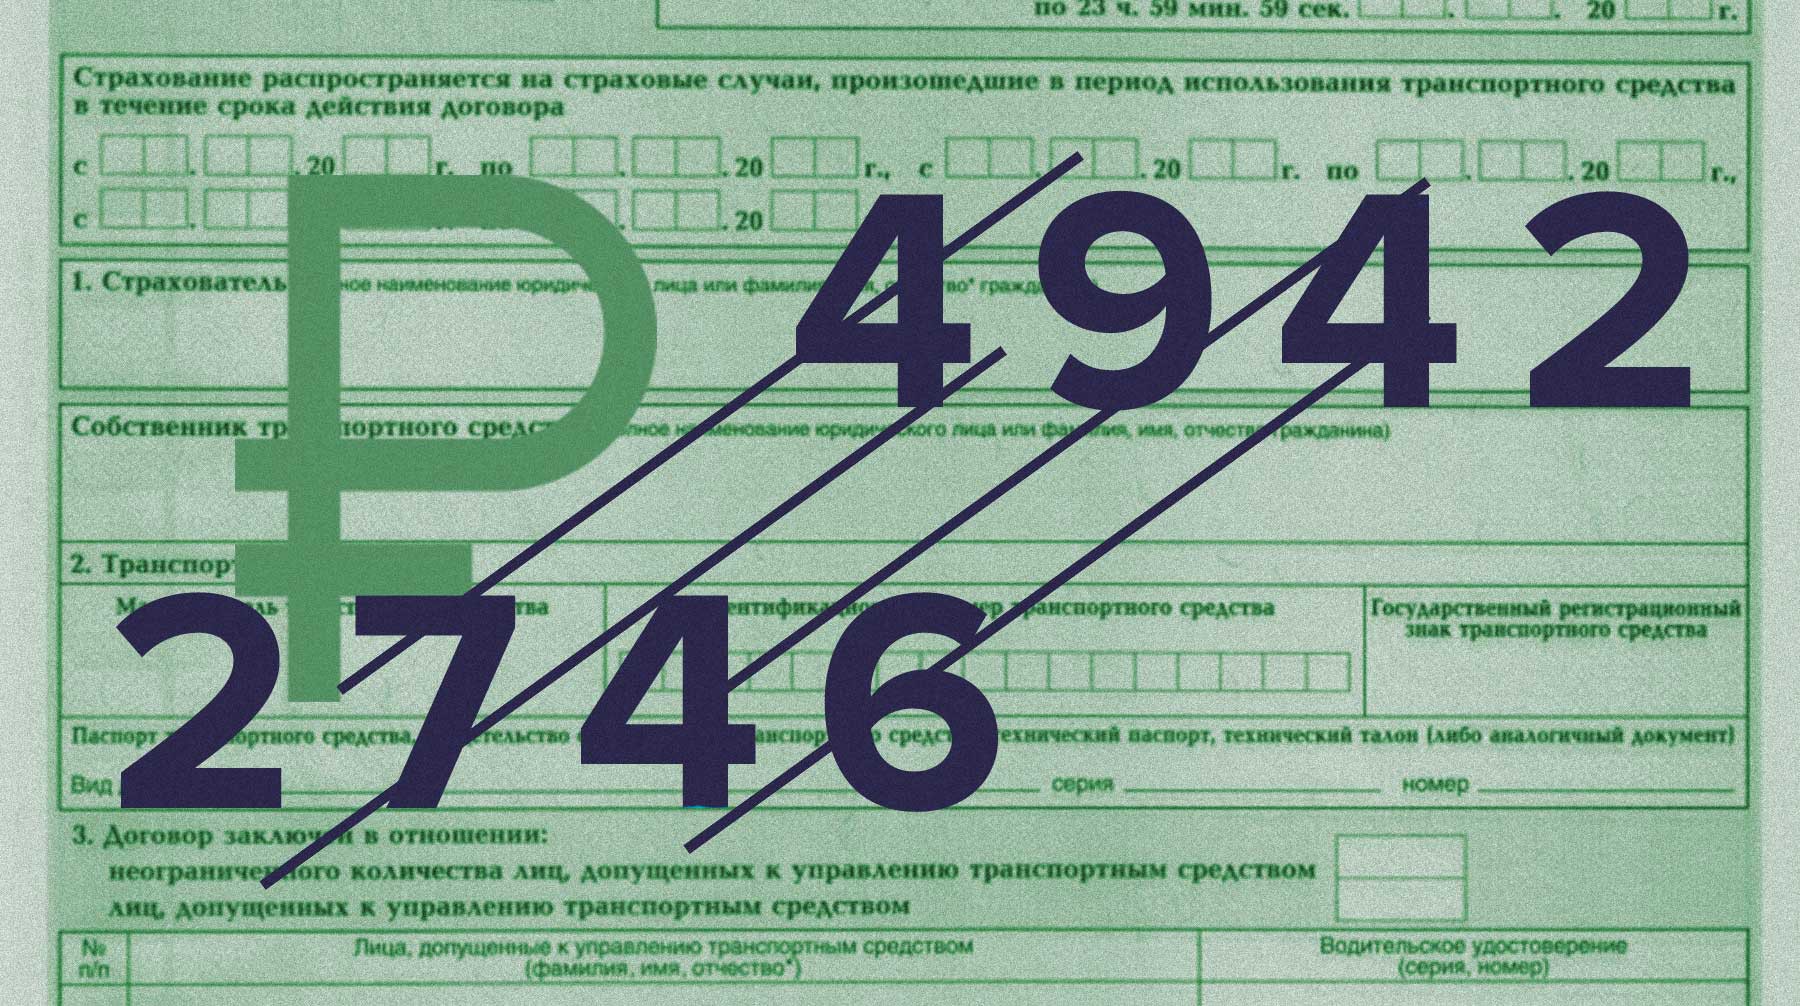 Dailystorm - Российские страховые компании начали продавать ОСАГО по новым тарифам